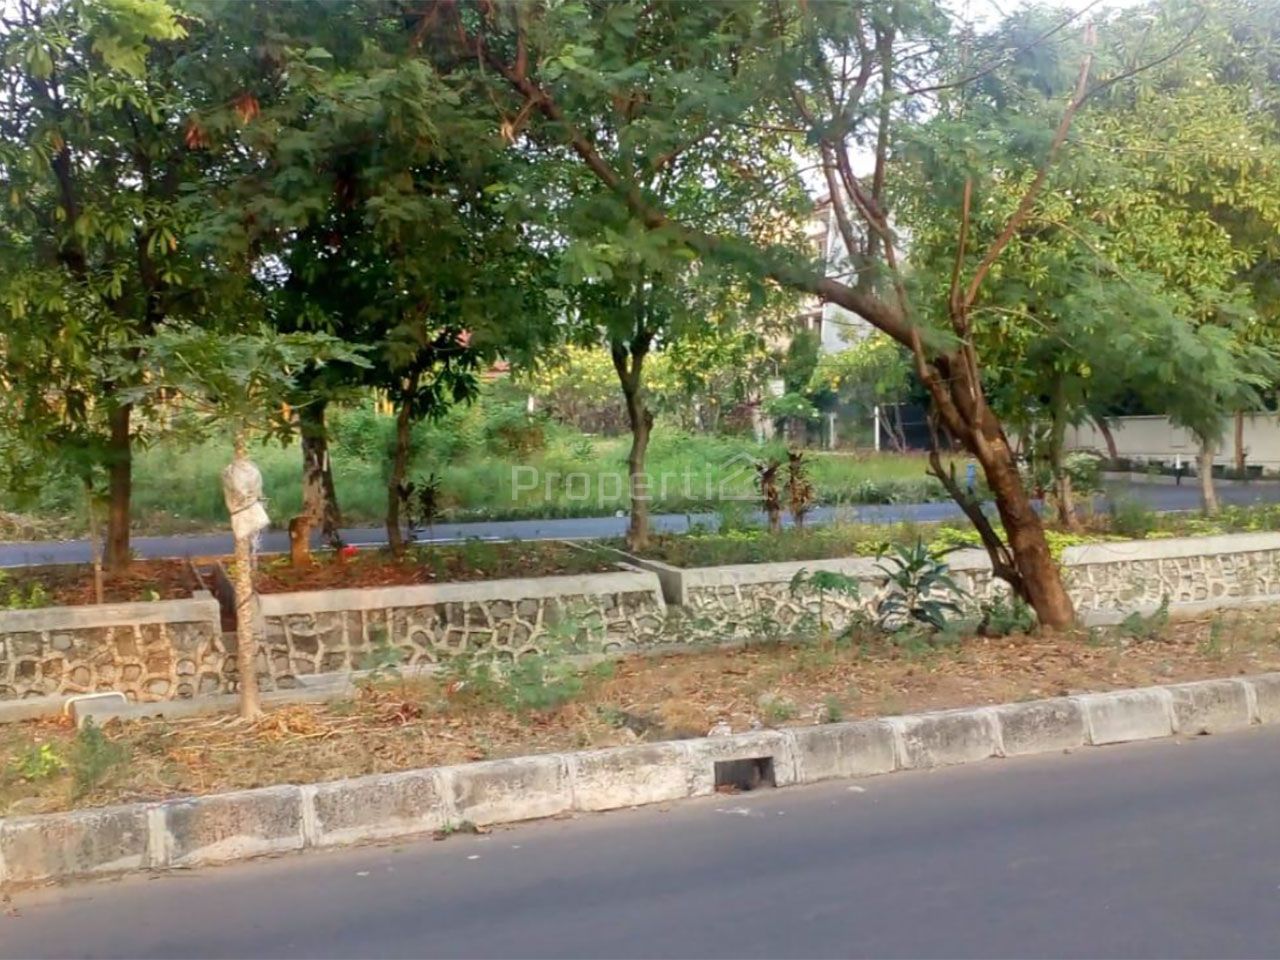 Strategic Land in Settlement in Joglo, DKI Jakarta